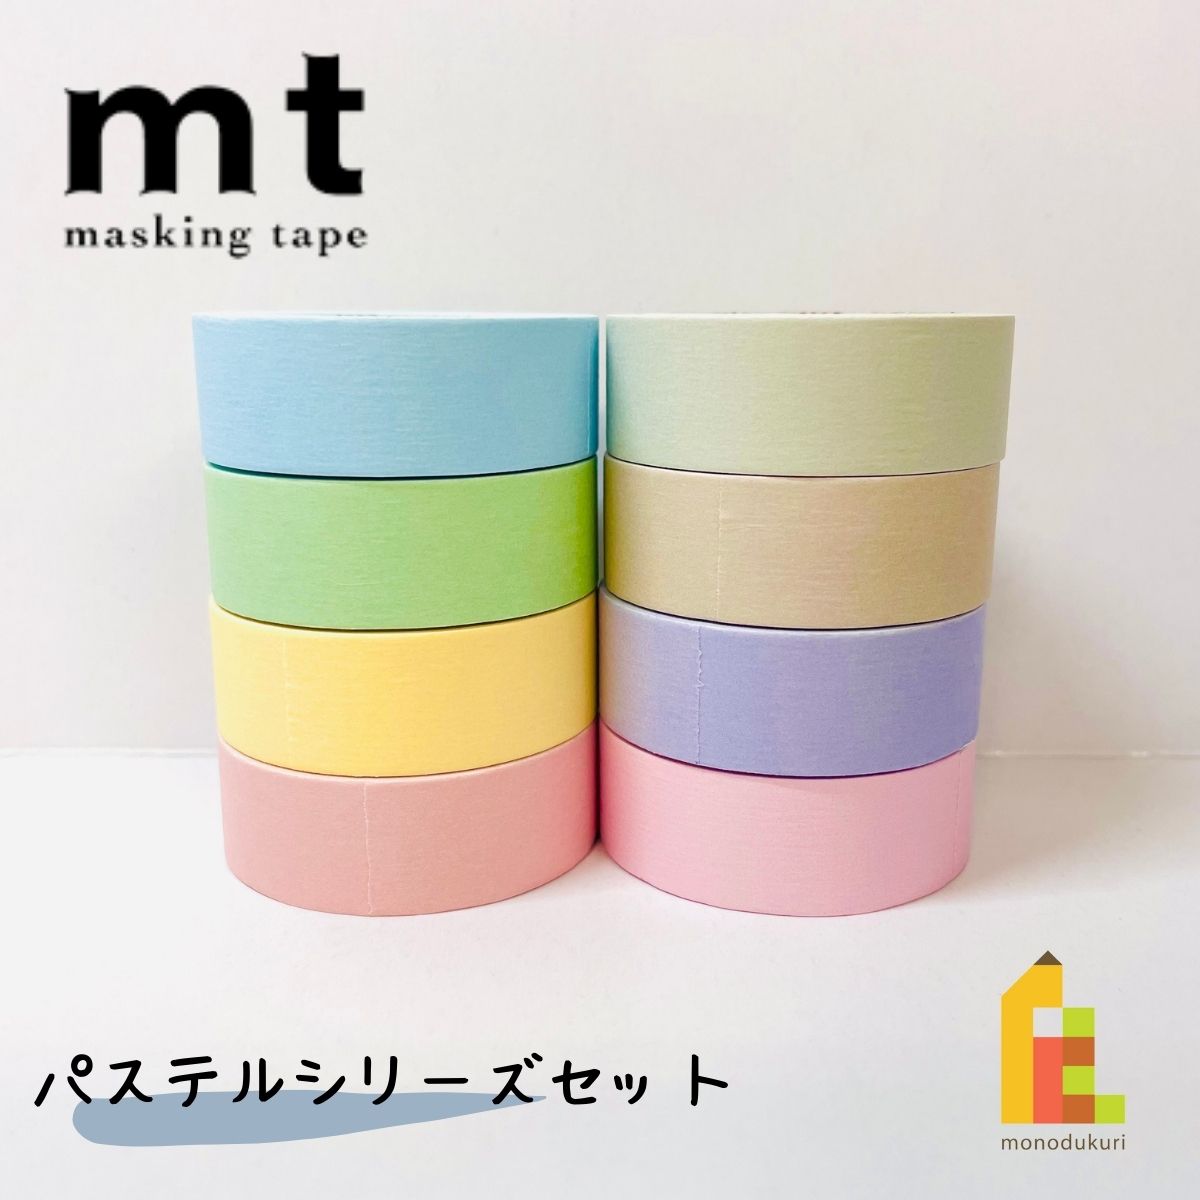 マスキングテープ Tilely Maskingtape タイリーマスキングテープ 日本製